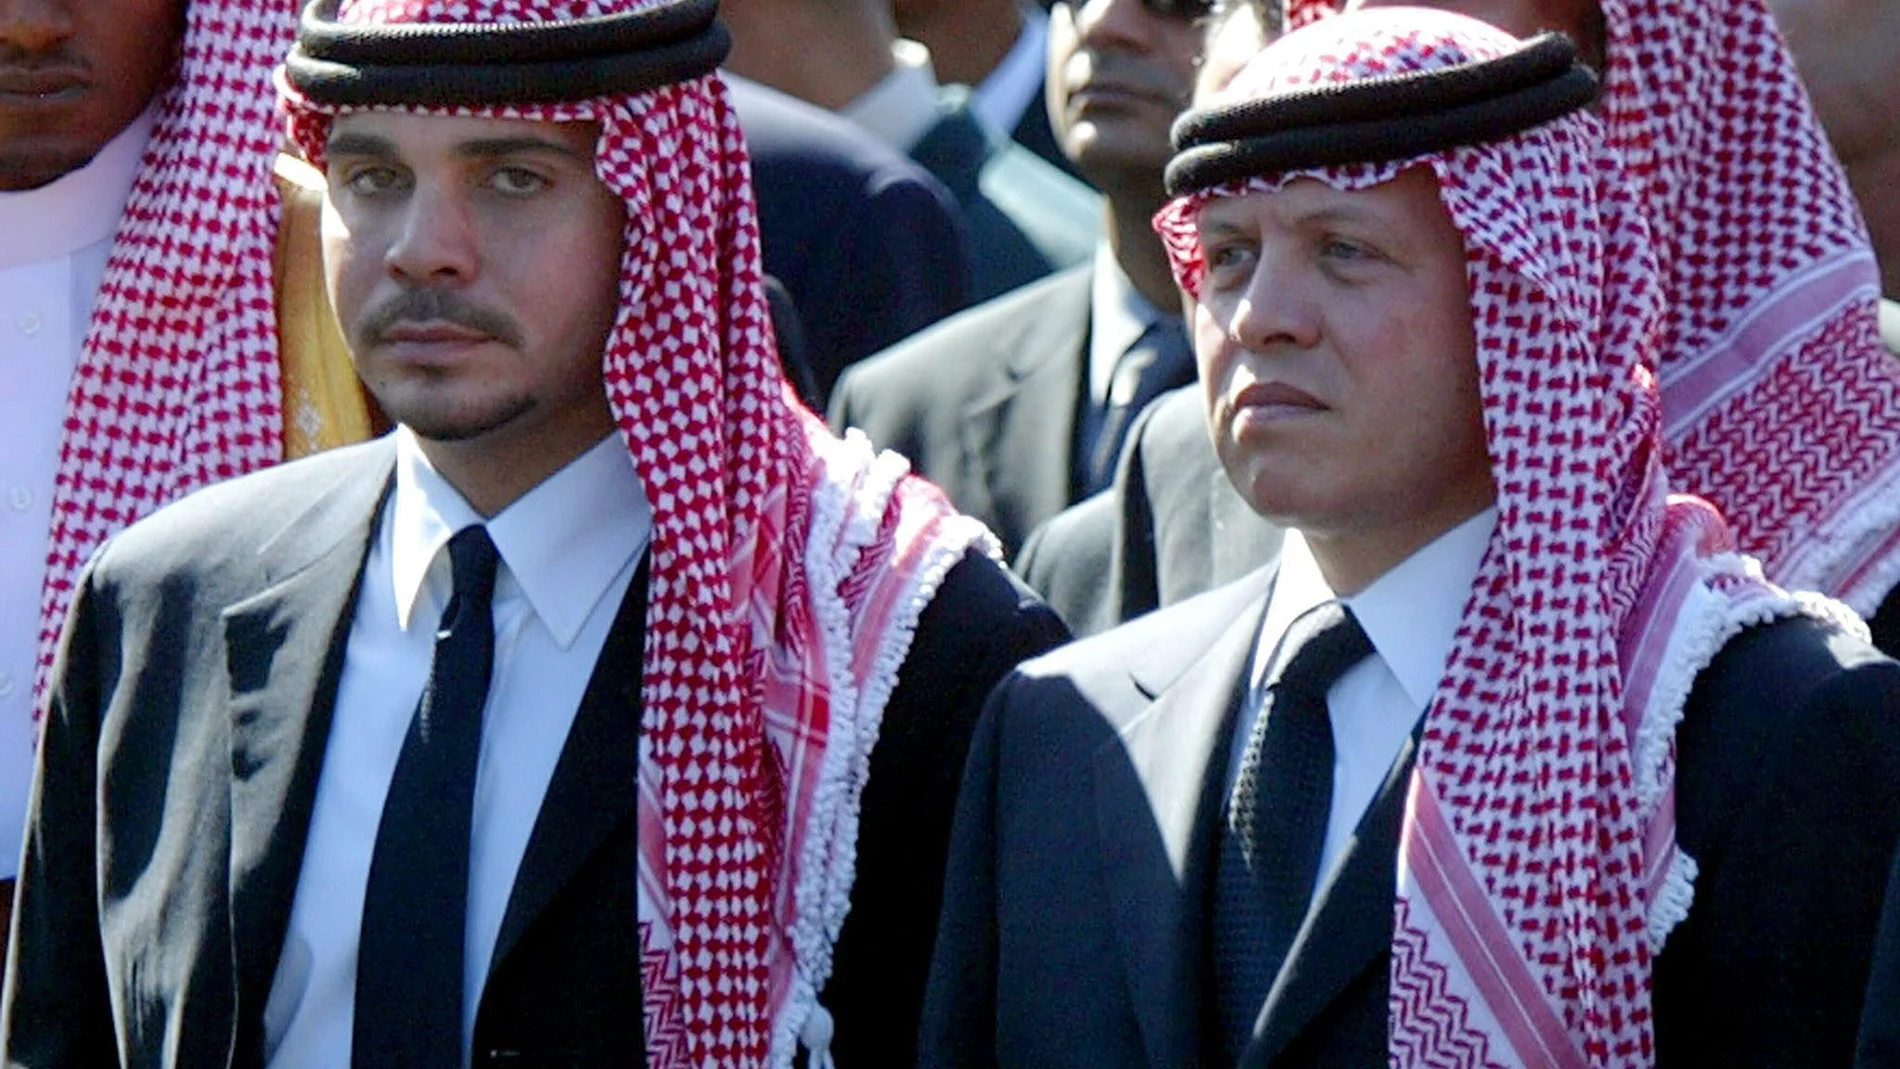 El ex príncipe heredero Hamzah bin Al Hussein con su hermanastro el actual rey Abdalá de Jordania durante el funeral de ex presidente palestino Yasir Arafat